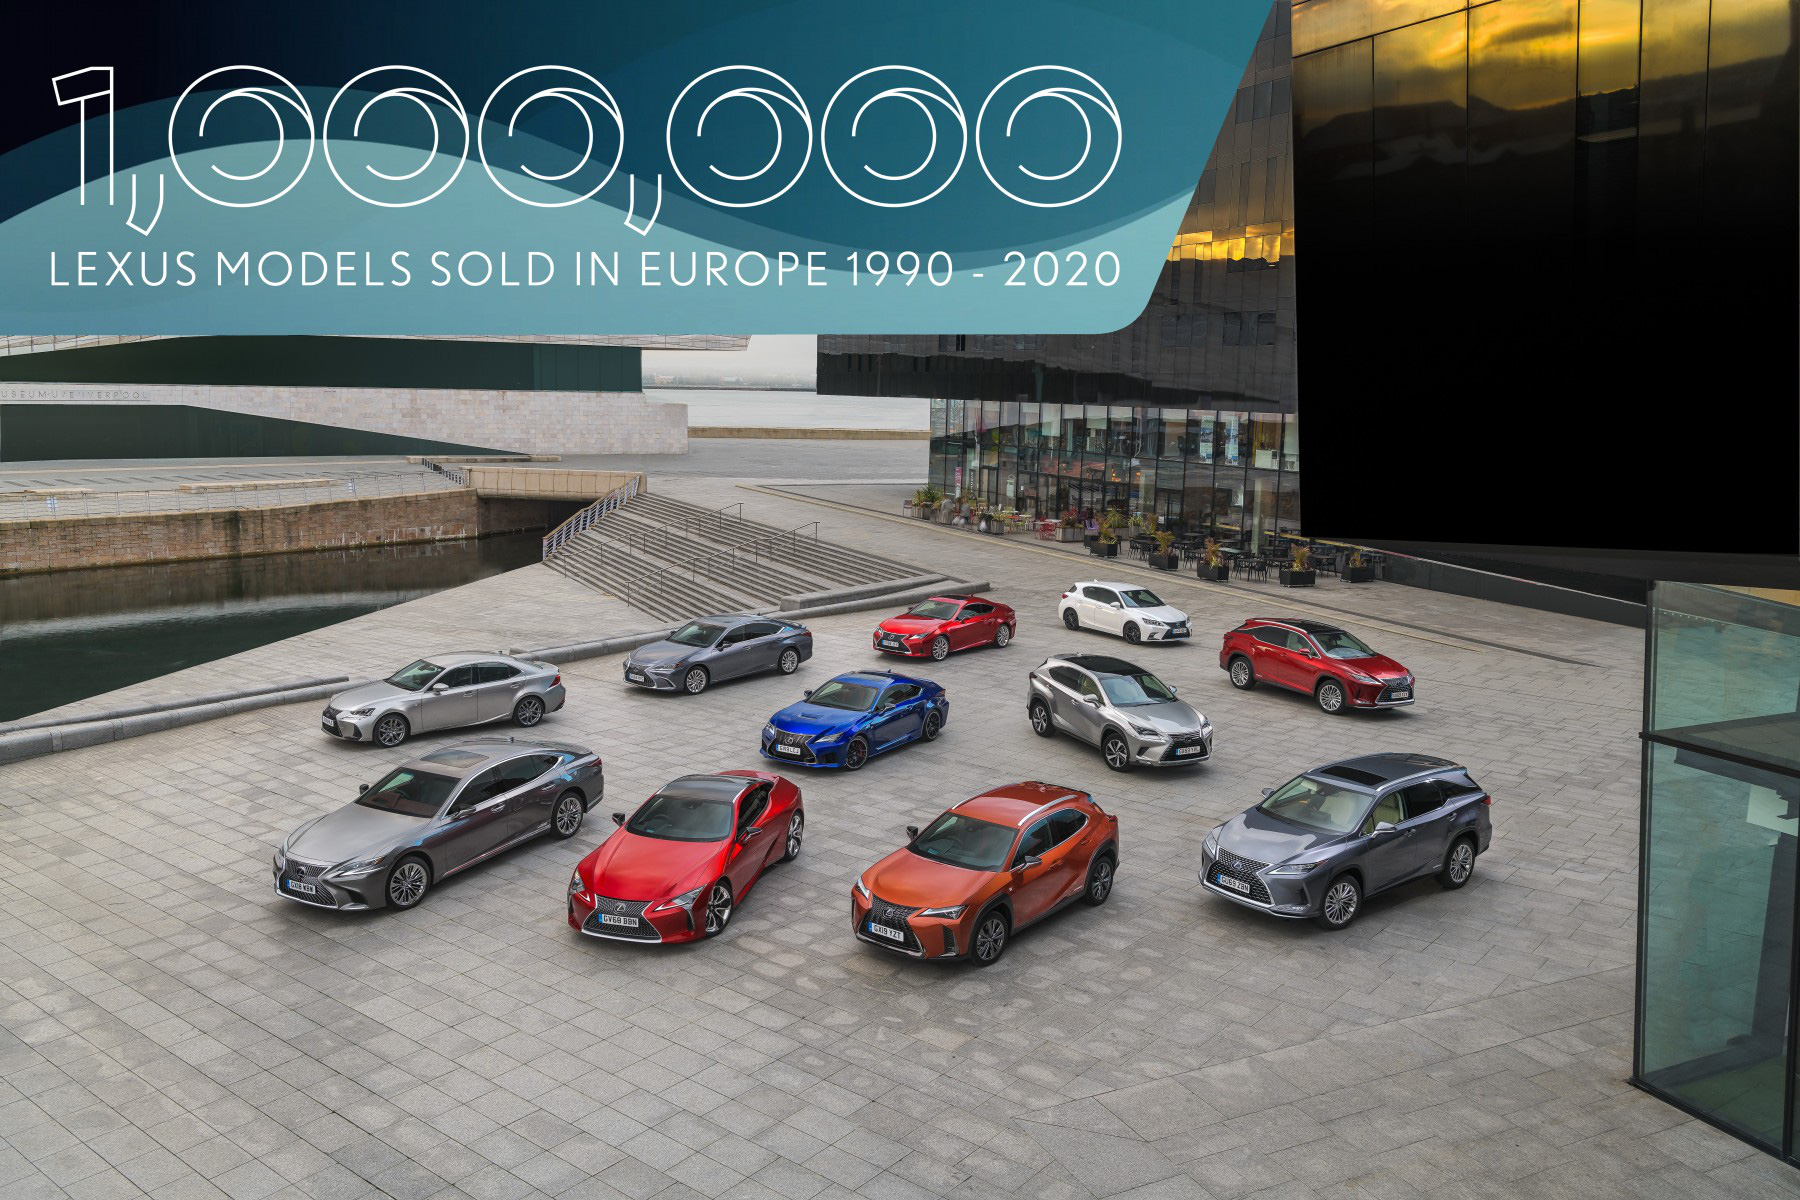 Lexus bán 1 triệu xe tại châu Âu sau… 30 năm, công lớn nhờ dòng tên này